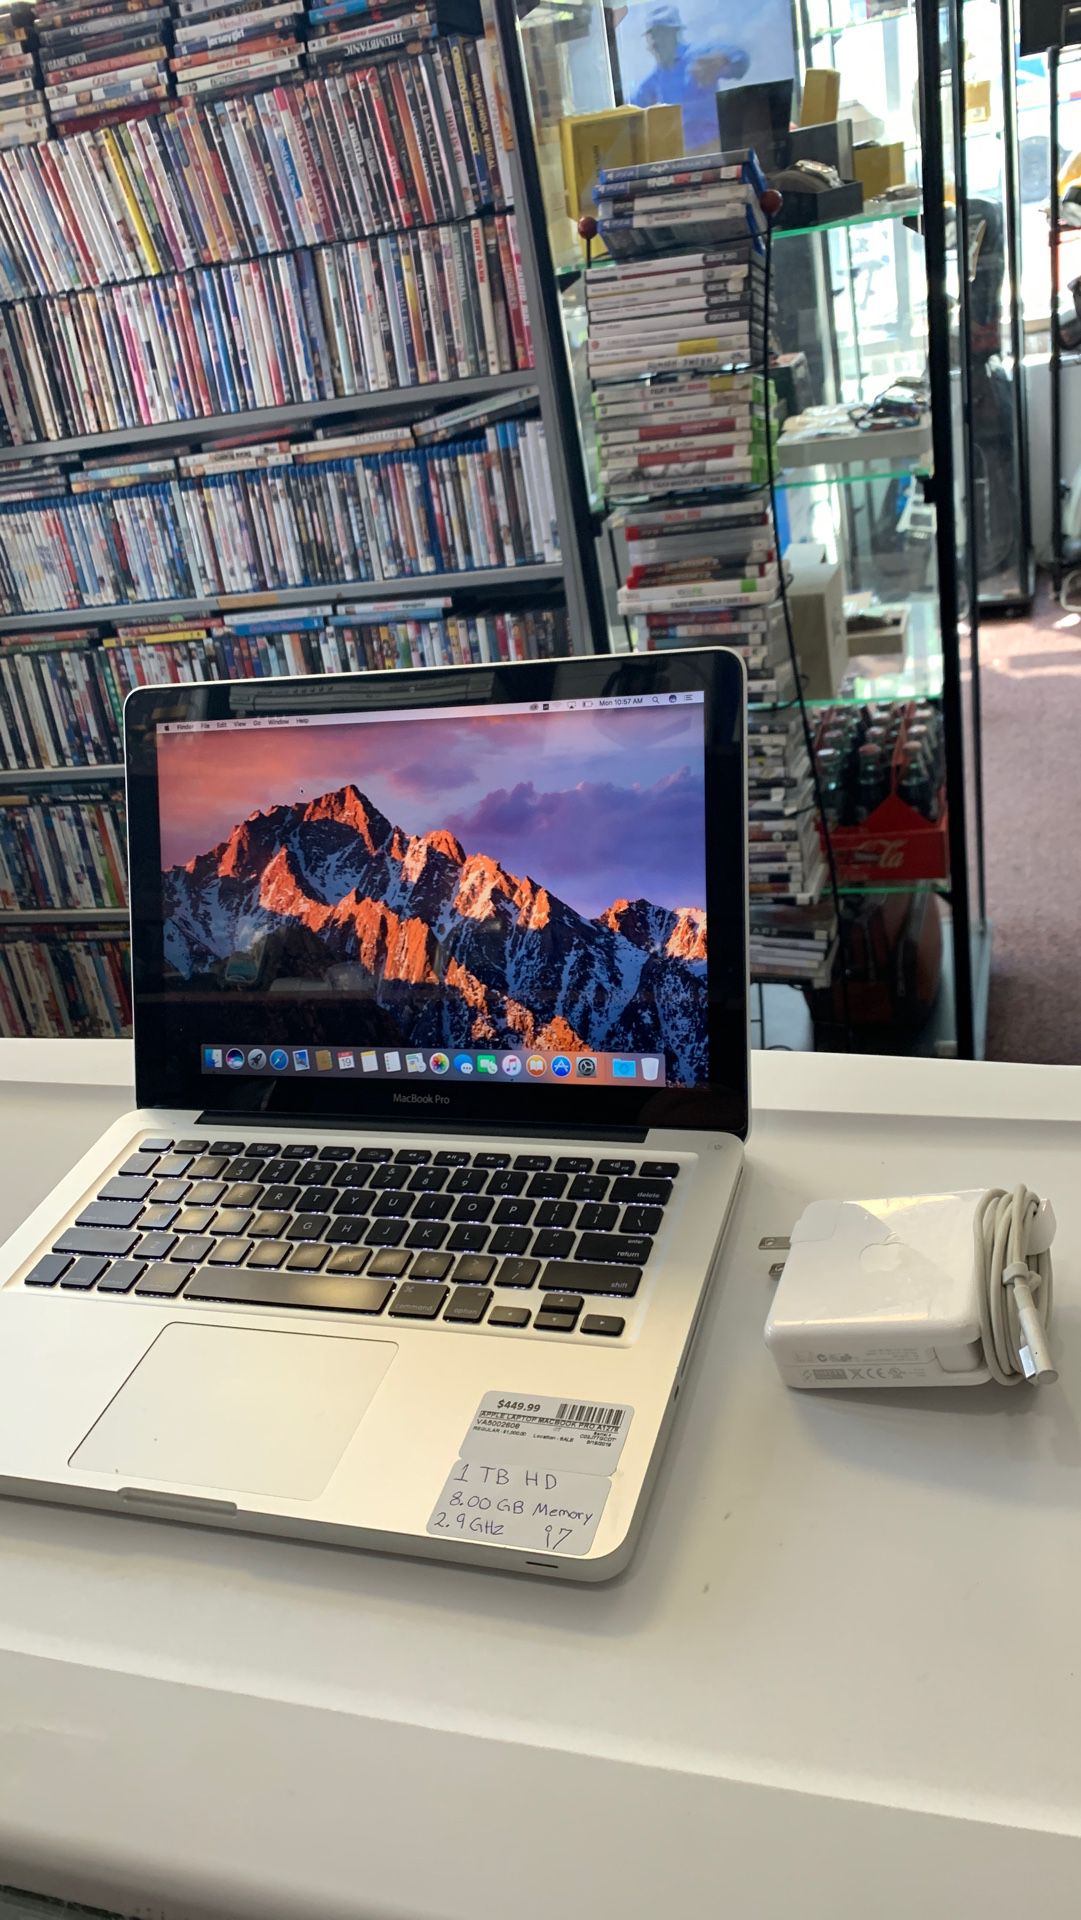 MacBook Pro A1278 (i7)(8GB) (1TB) 13-Inch “Mid 2012”